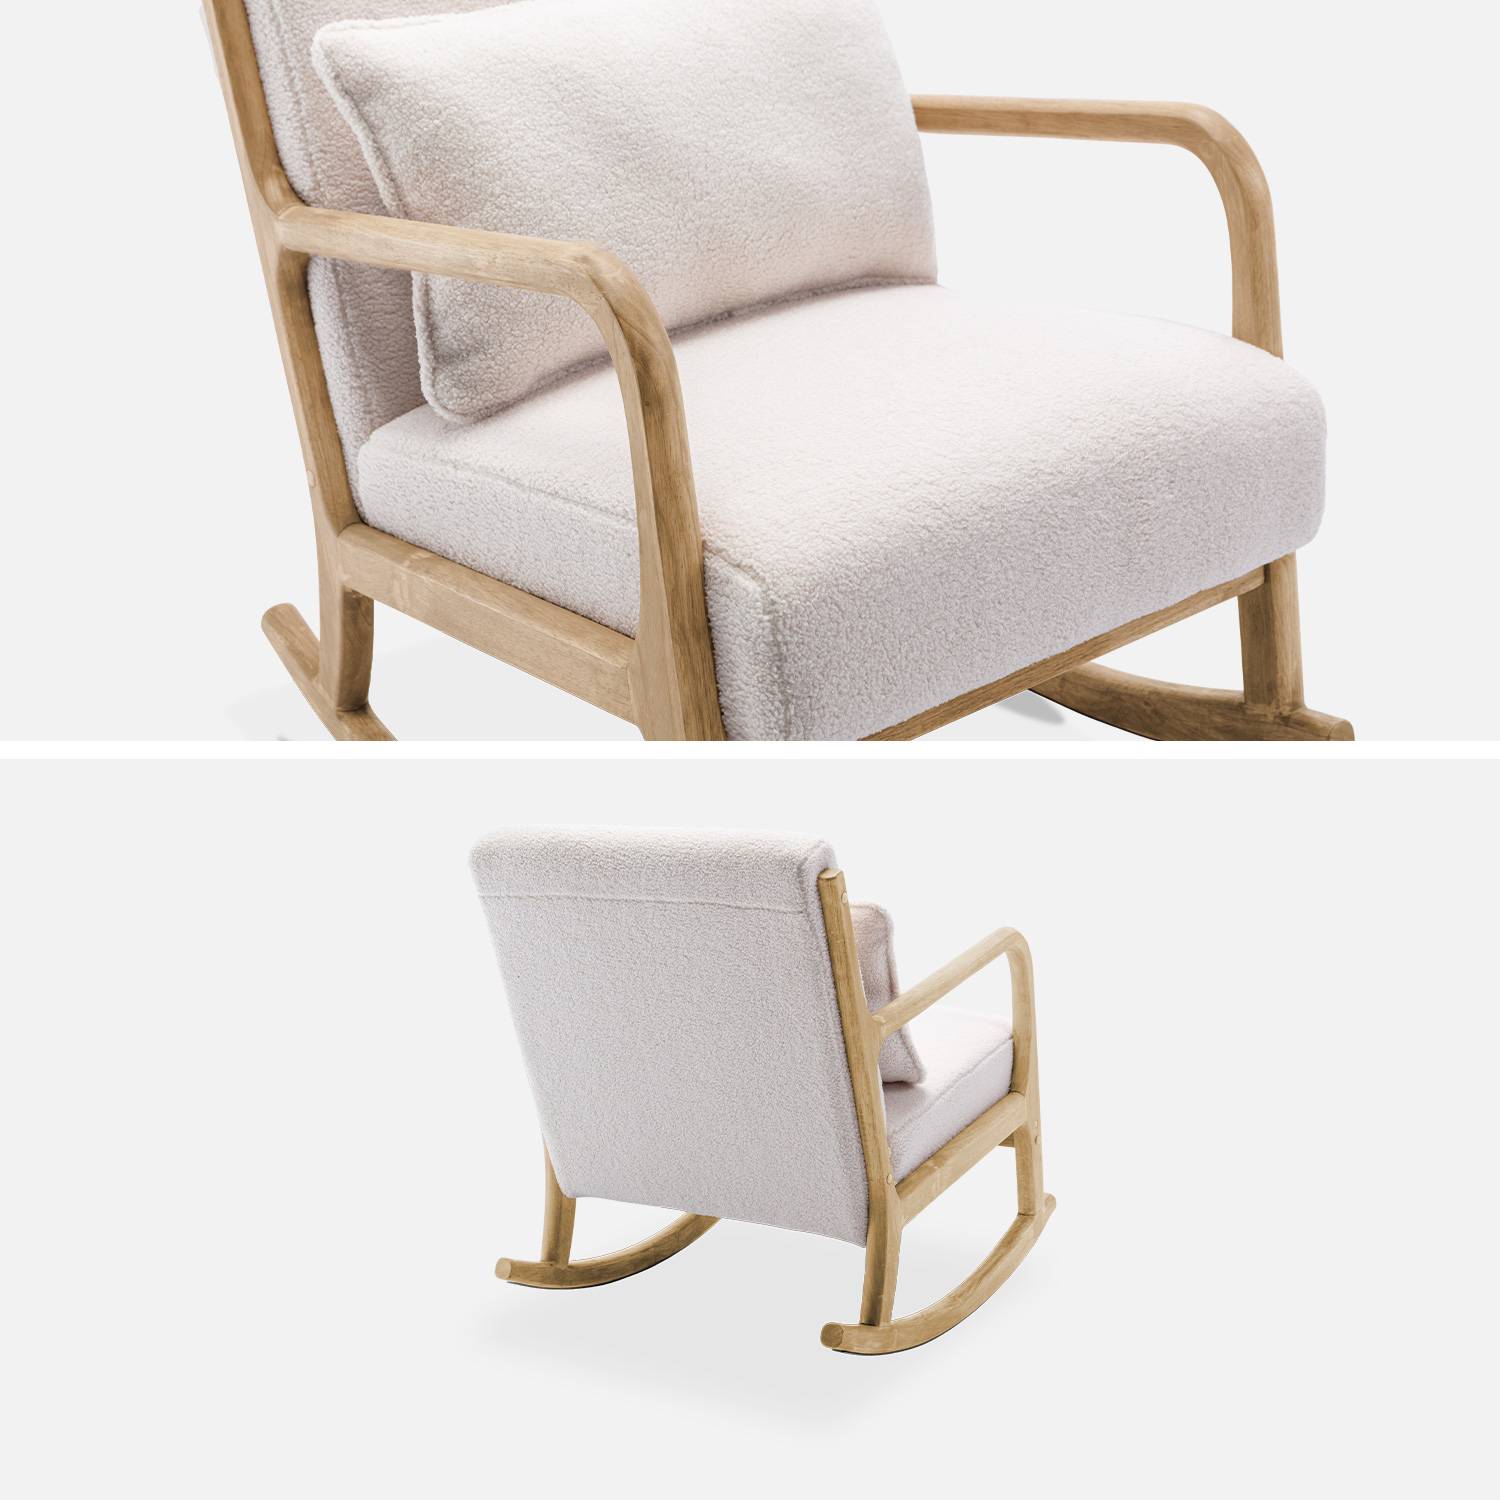 Fauteuil à bascule design en bois et tissu, bouclettes blanches, 1 place, rocking chair scandinave,sweeek,Photo7